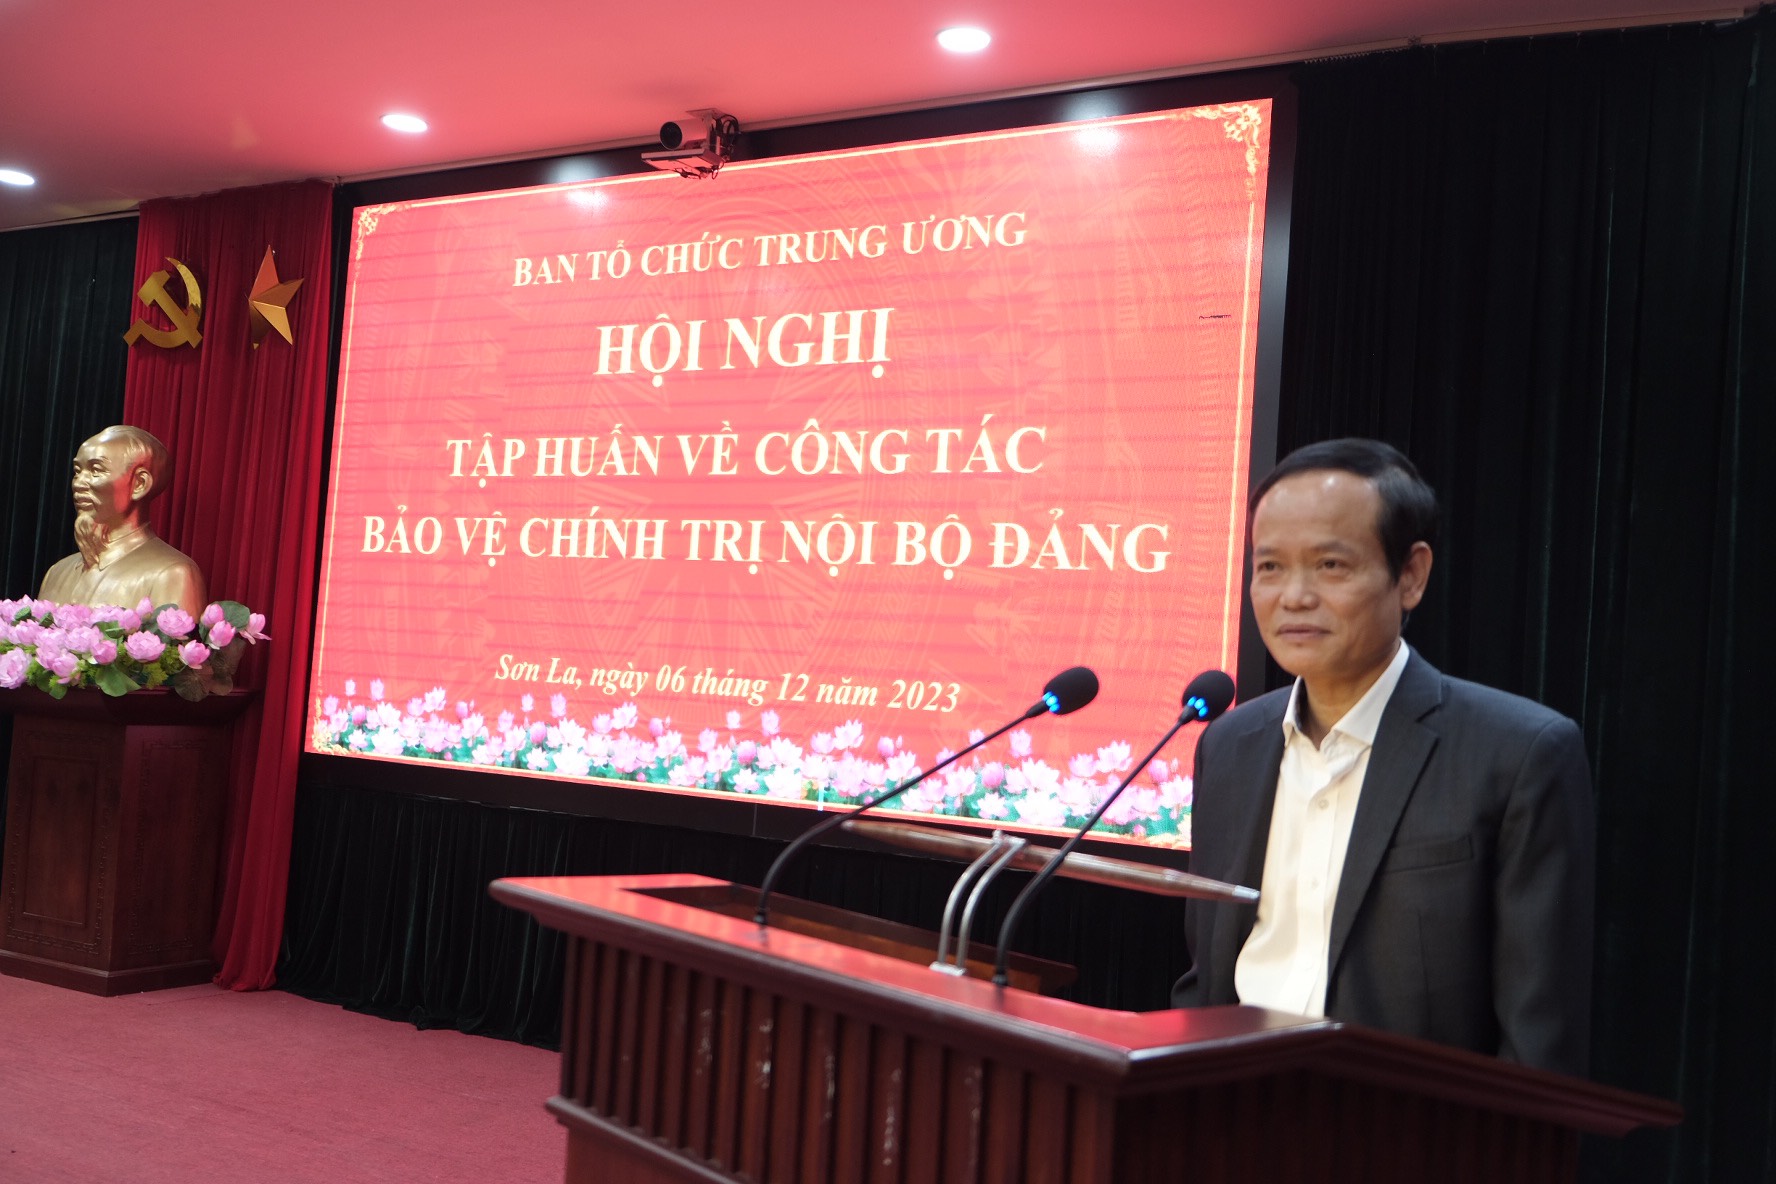 Cục trưởng Cục Bảo vệ chính trị nội bộ Nguyễn Kim Minh giới thiệu một số văn bản mới về công tác bảo vệ chính trị nội bộ.